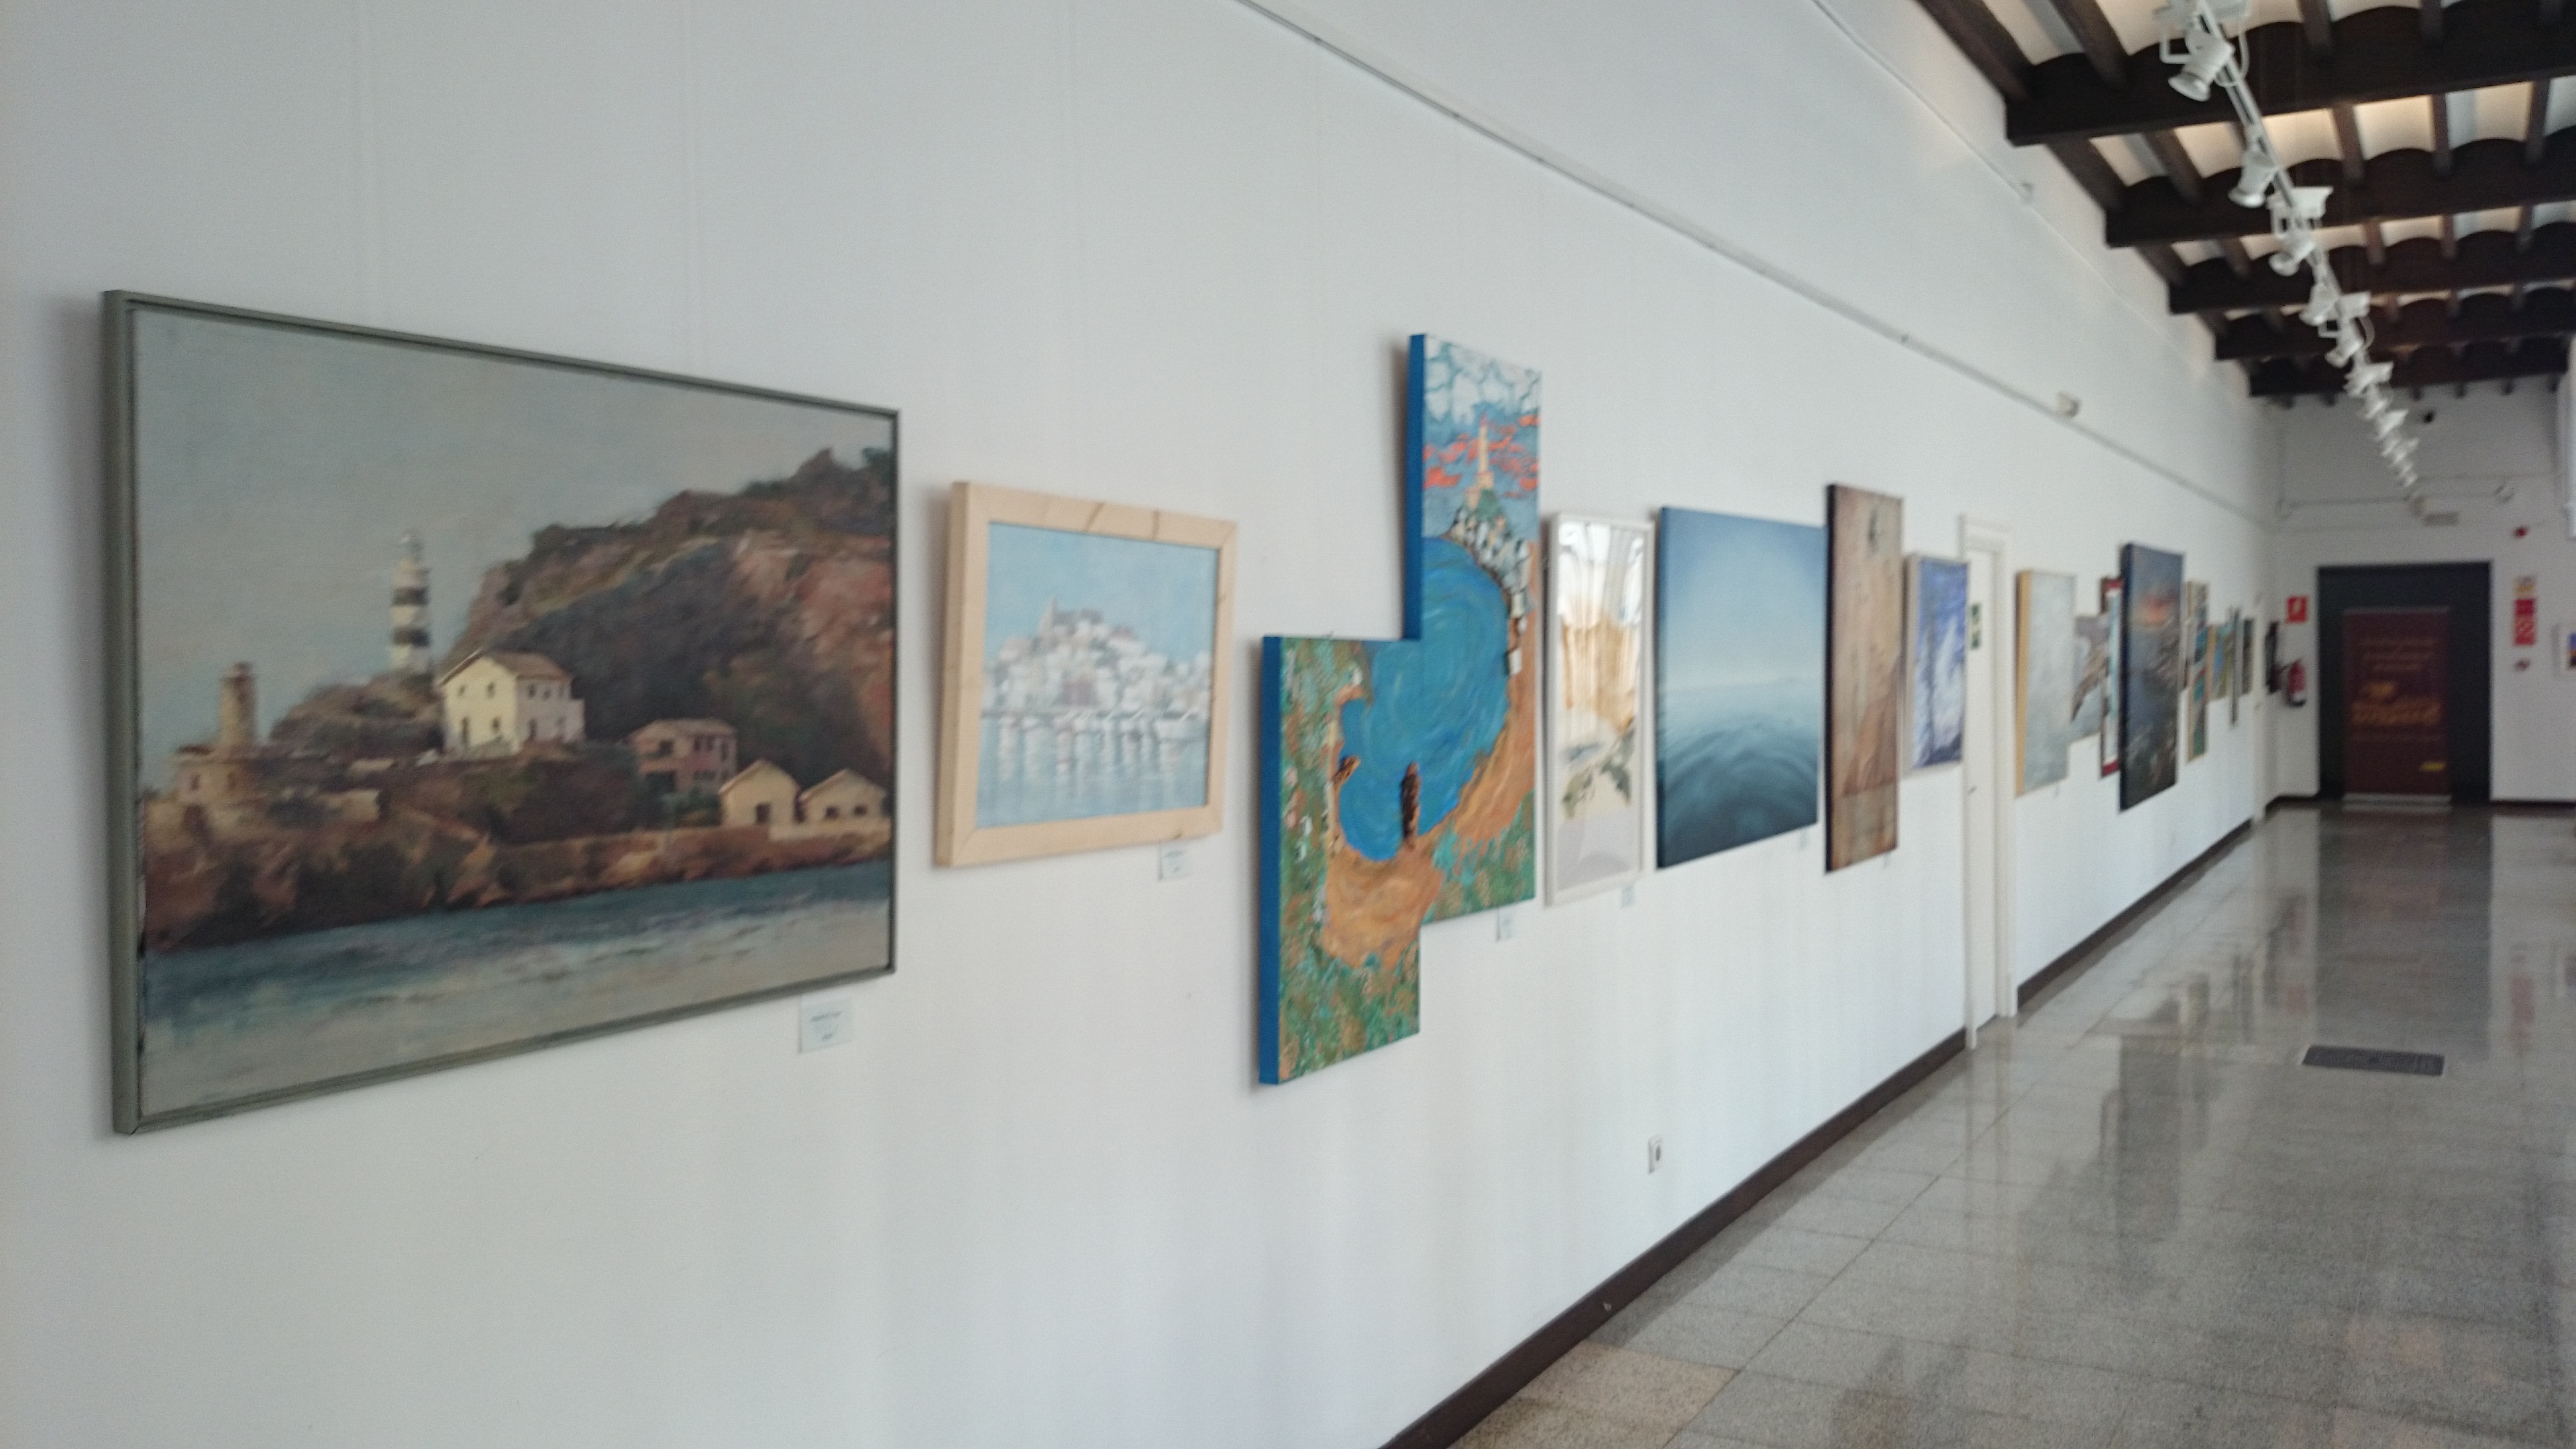 La Autoridad Portuaria de Baleares expone las obras del 5º Concursode Pintura y Fotografía sobre los faros y puertos de Baleares